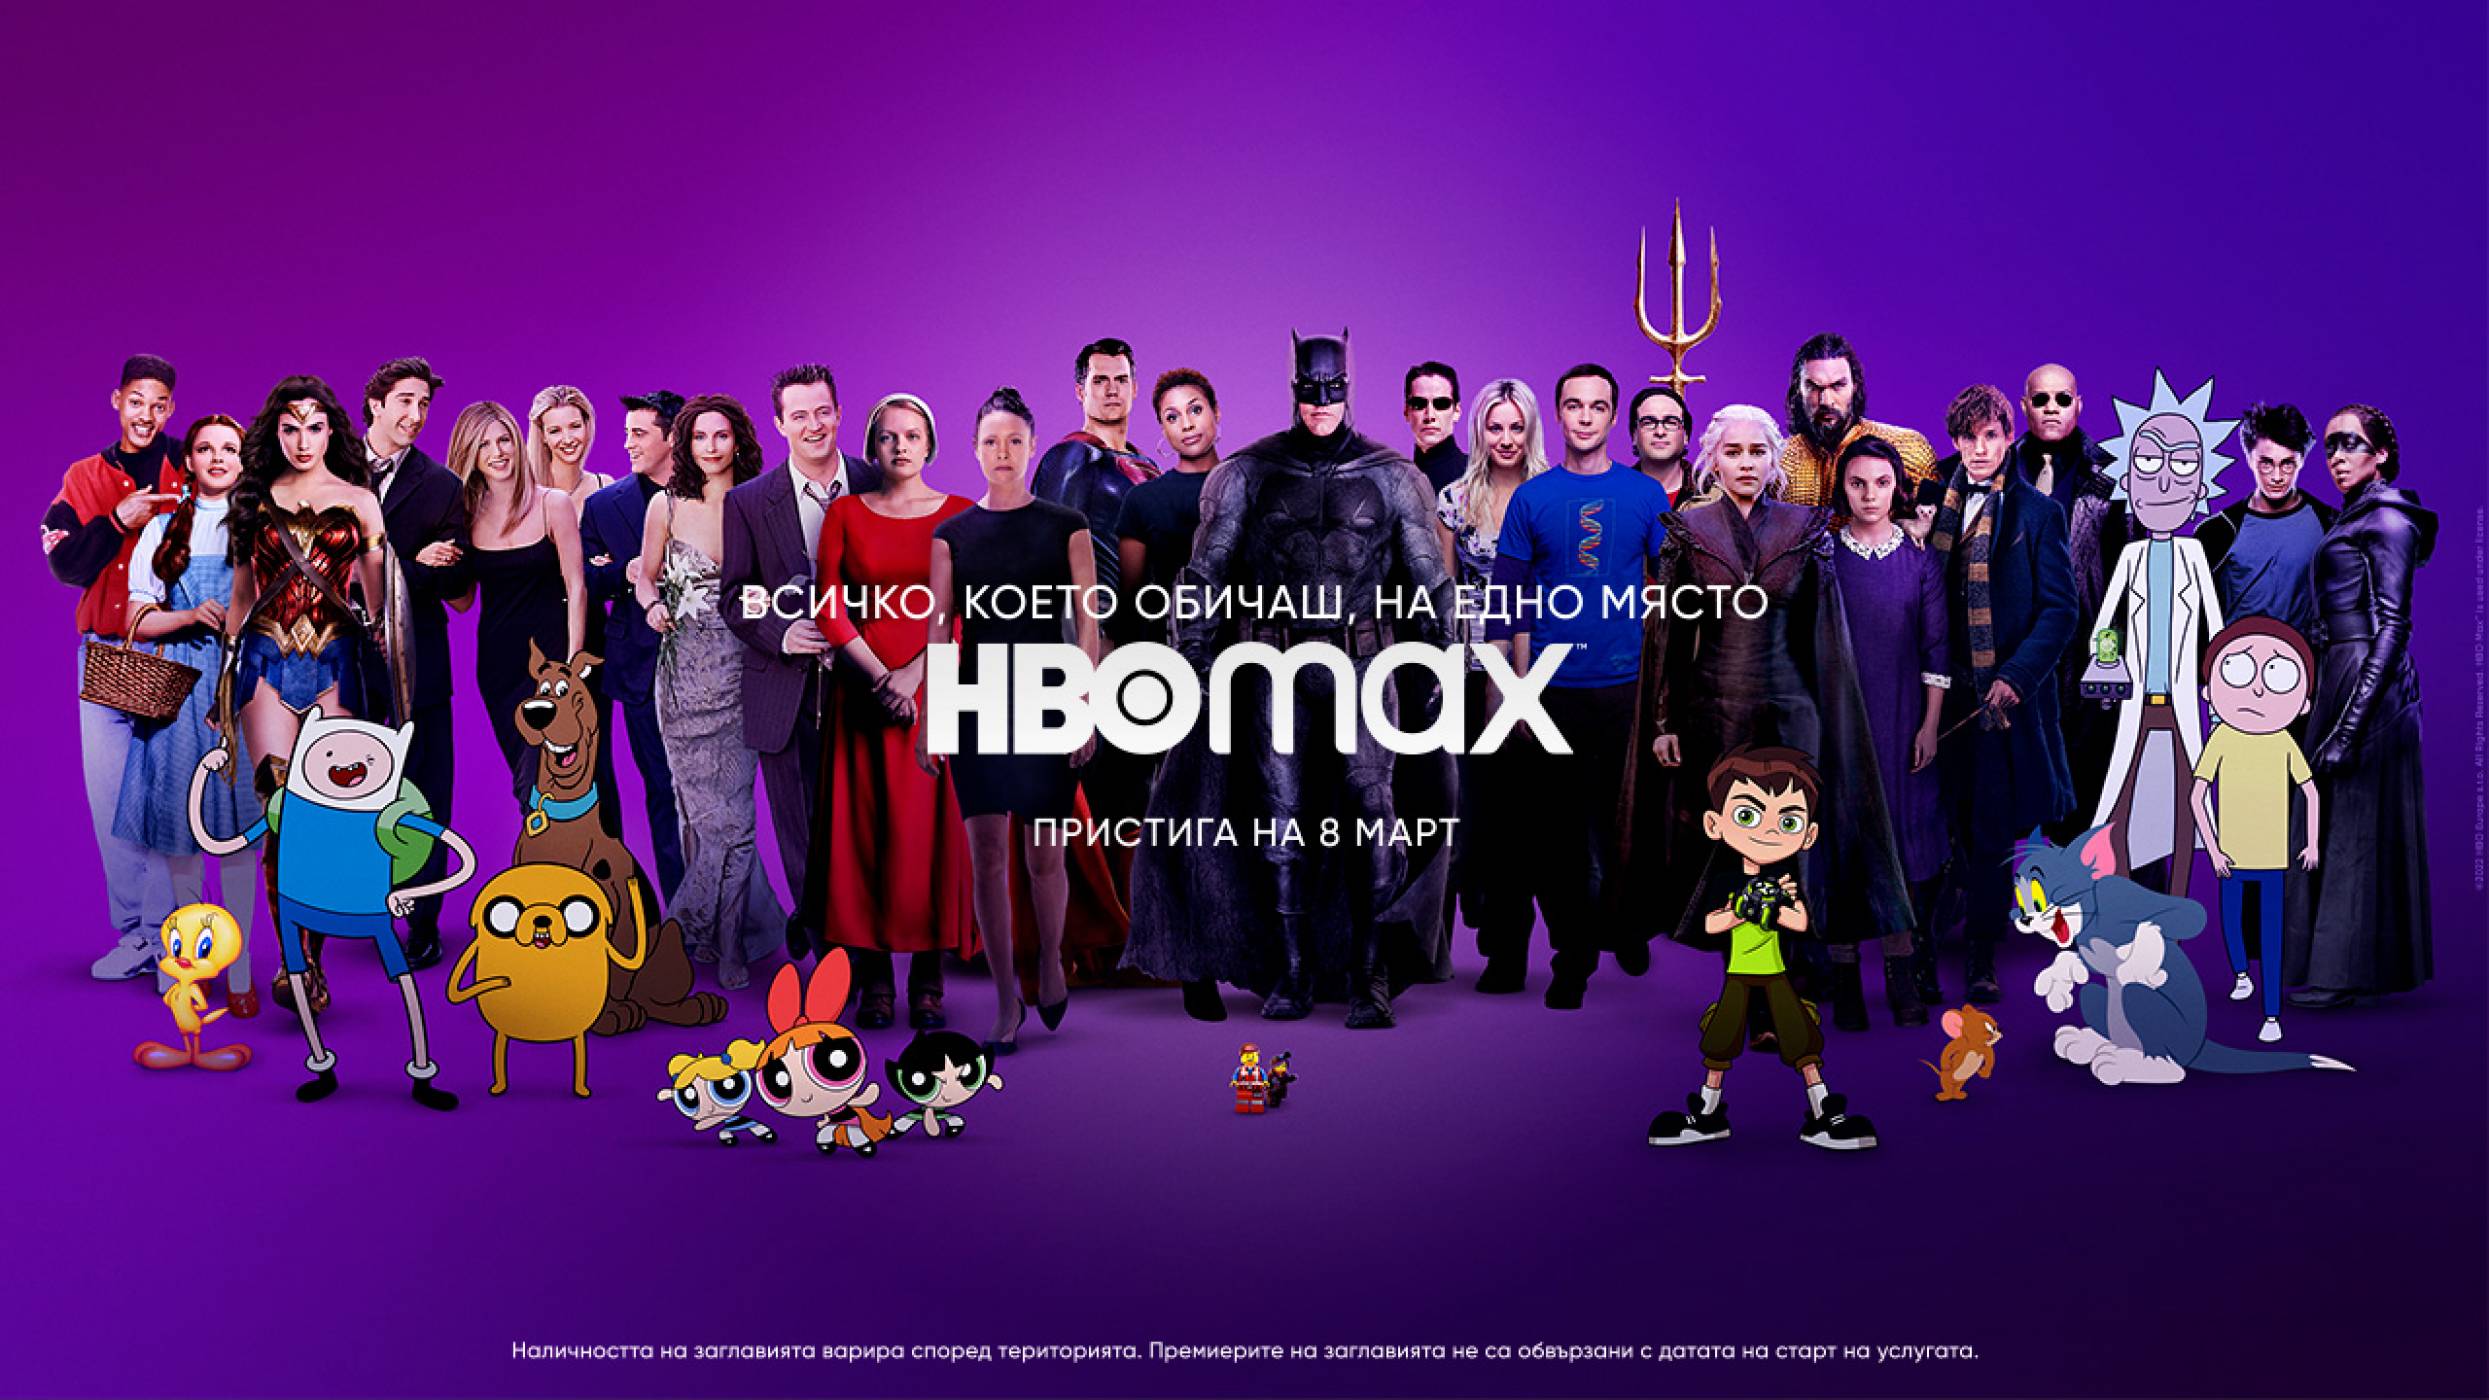 HBO MAX идва в България на 8 март (ВИДЕО)